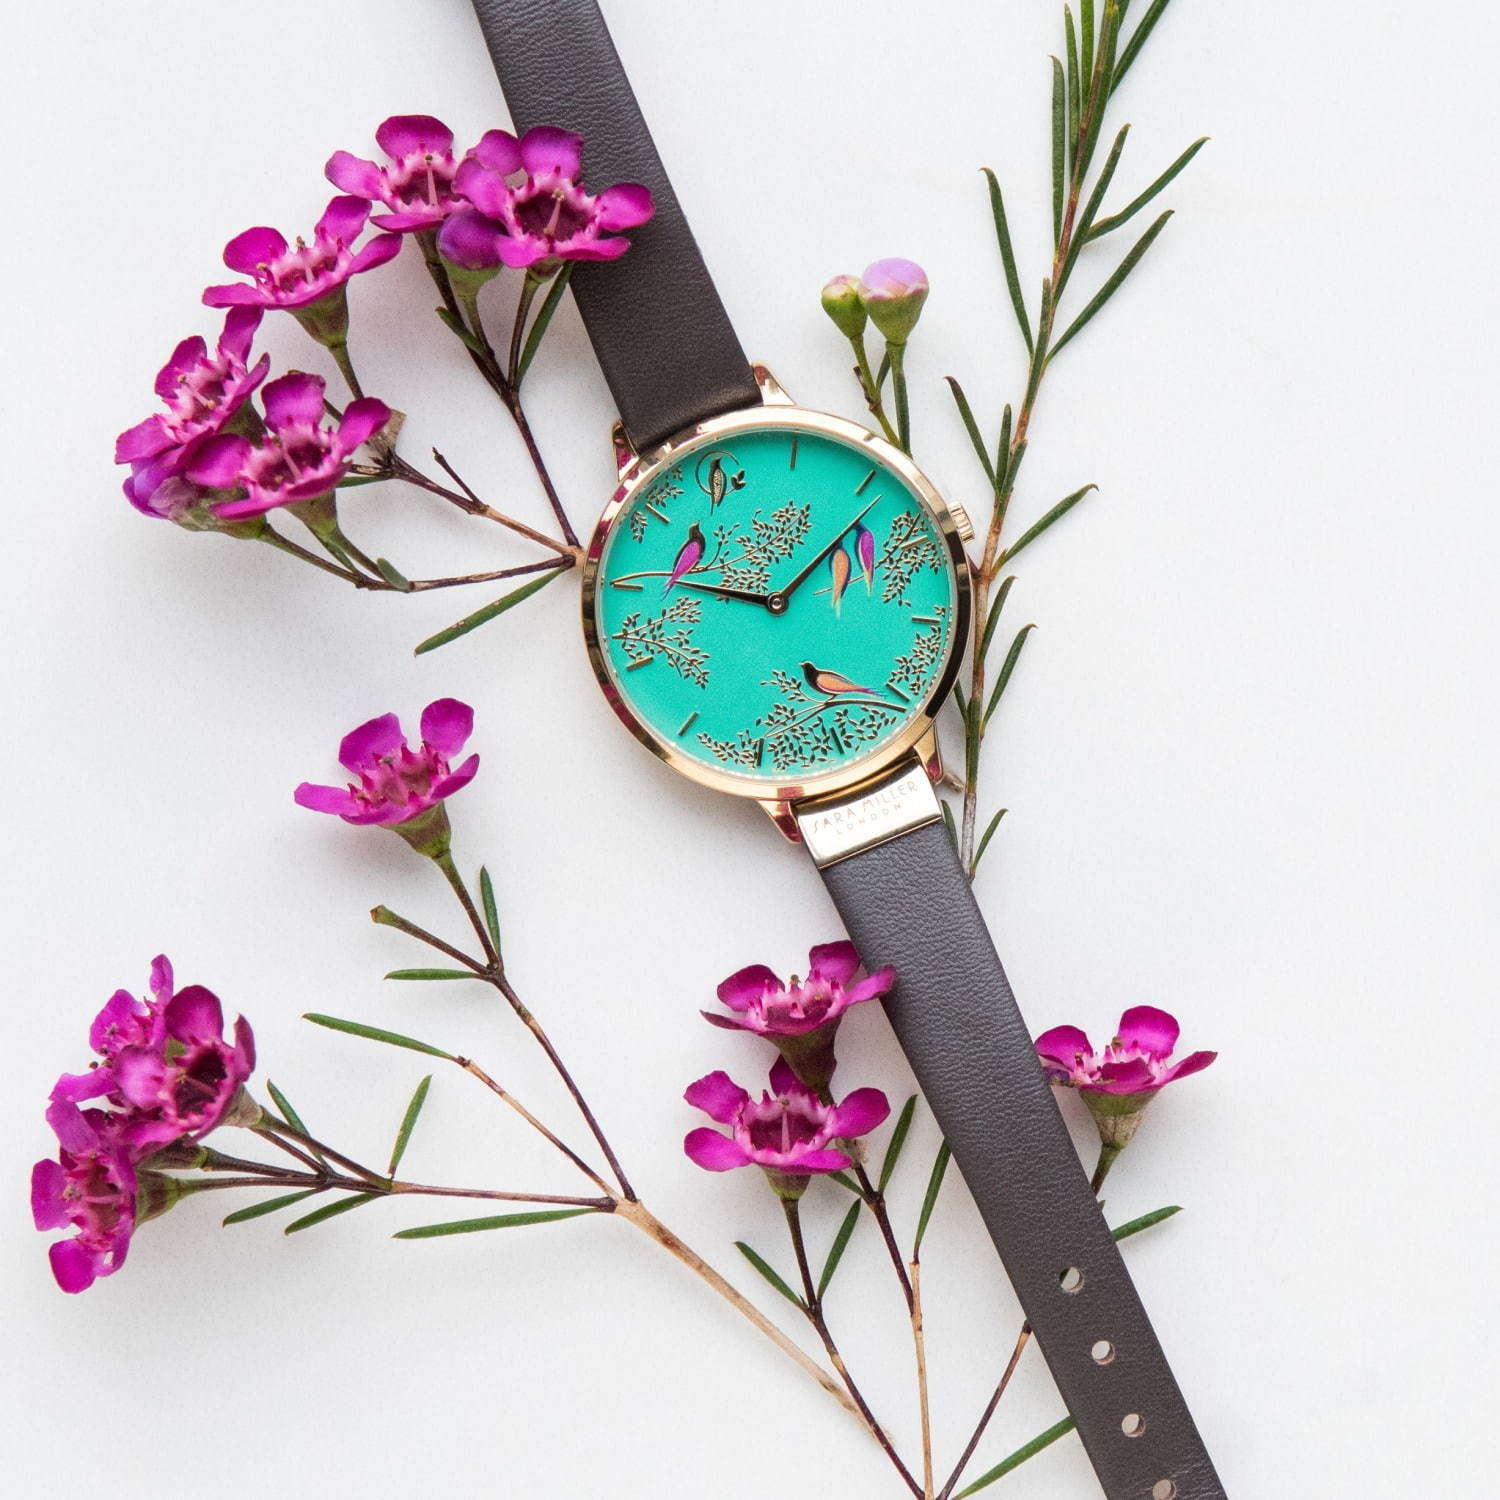 イギリス発 サラミラーロンドン の腕時計が日本初上陸 花や鳥を描いた色鮮やかな文字盤 ファッションプレス